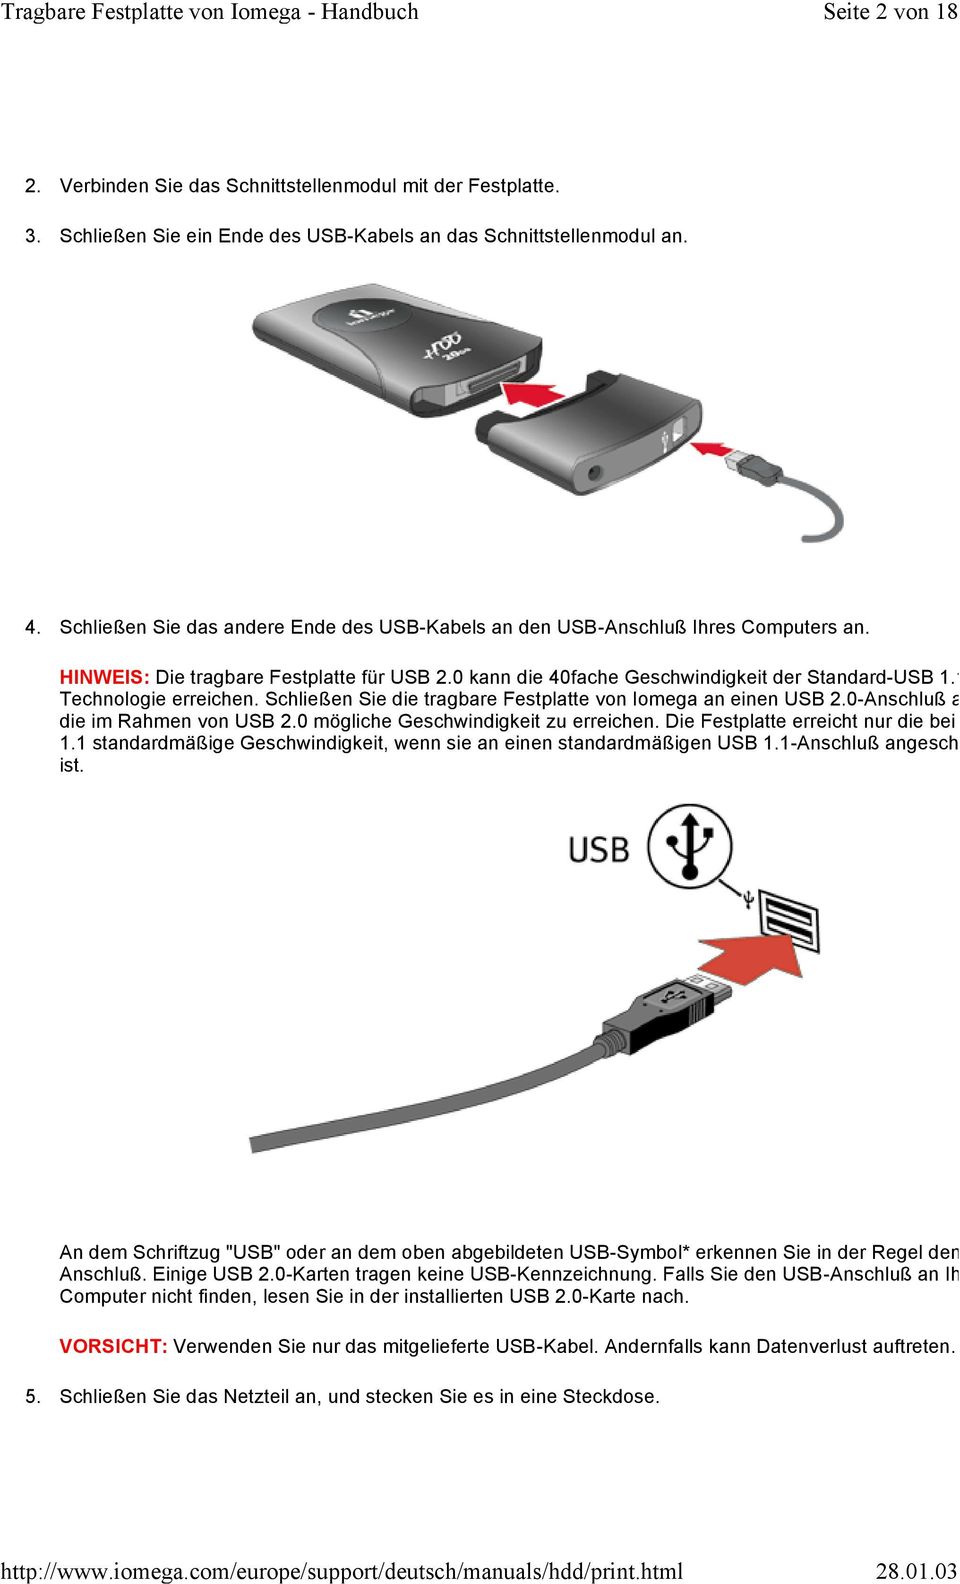 1 Technologie erreichen. Schließen Sie die tragbare Festplatte von Iomega an einen USB 2.0-Anschluß an, um die im Rahmen von USB 2.0 mögliche Geschwindigkeit zu erreichen.